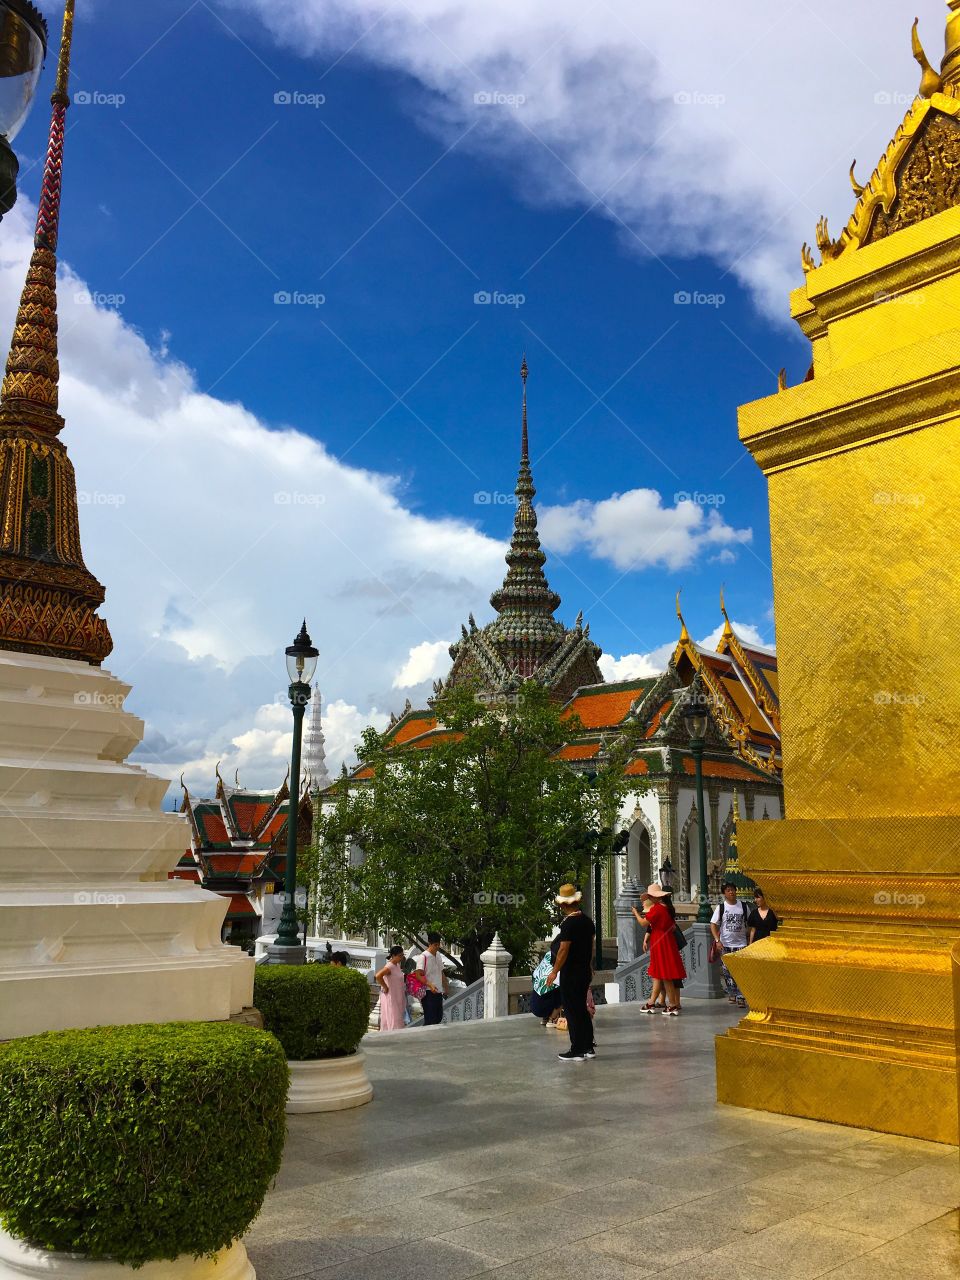 Grand Palace / Bangkok Thailand 15